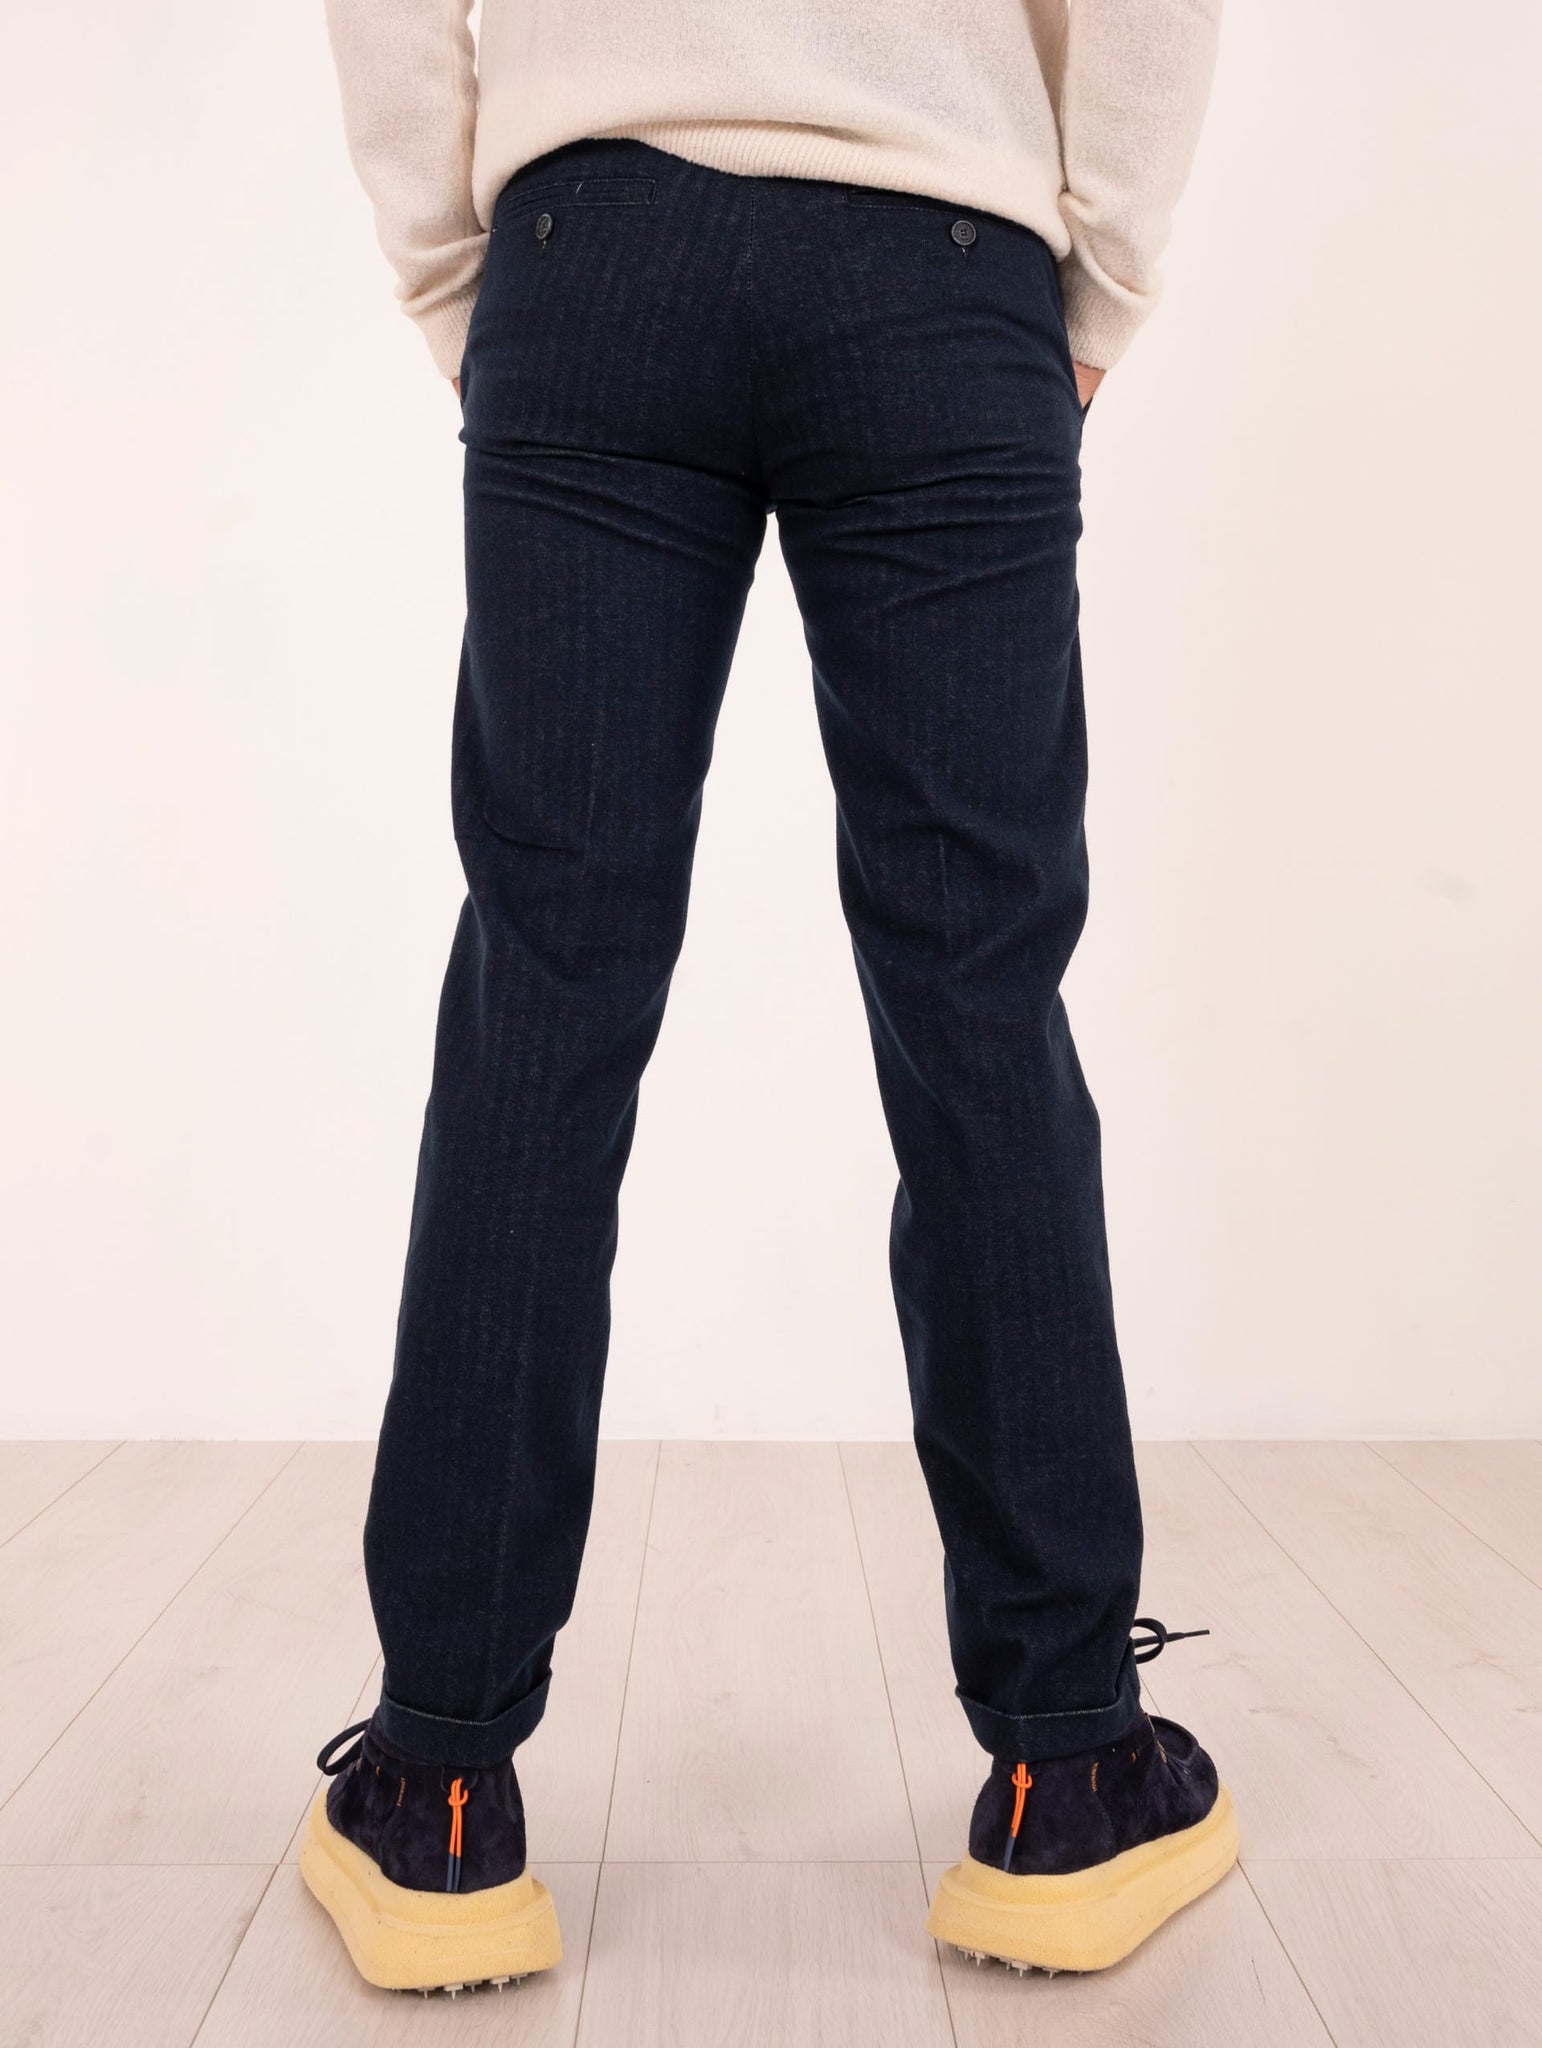 Pantalone Re-Hash in Cotone e Viscosa Spigato Blu Melange